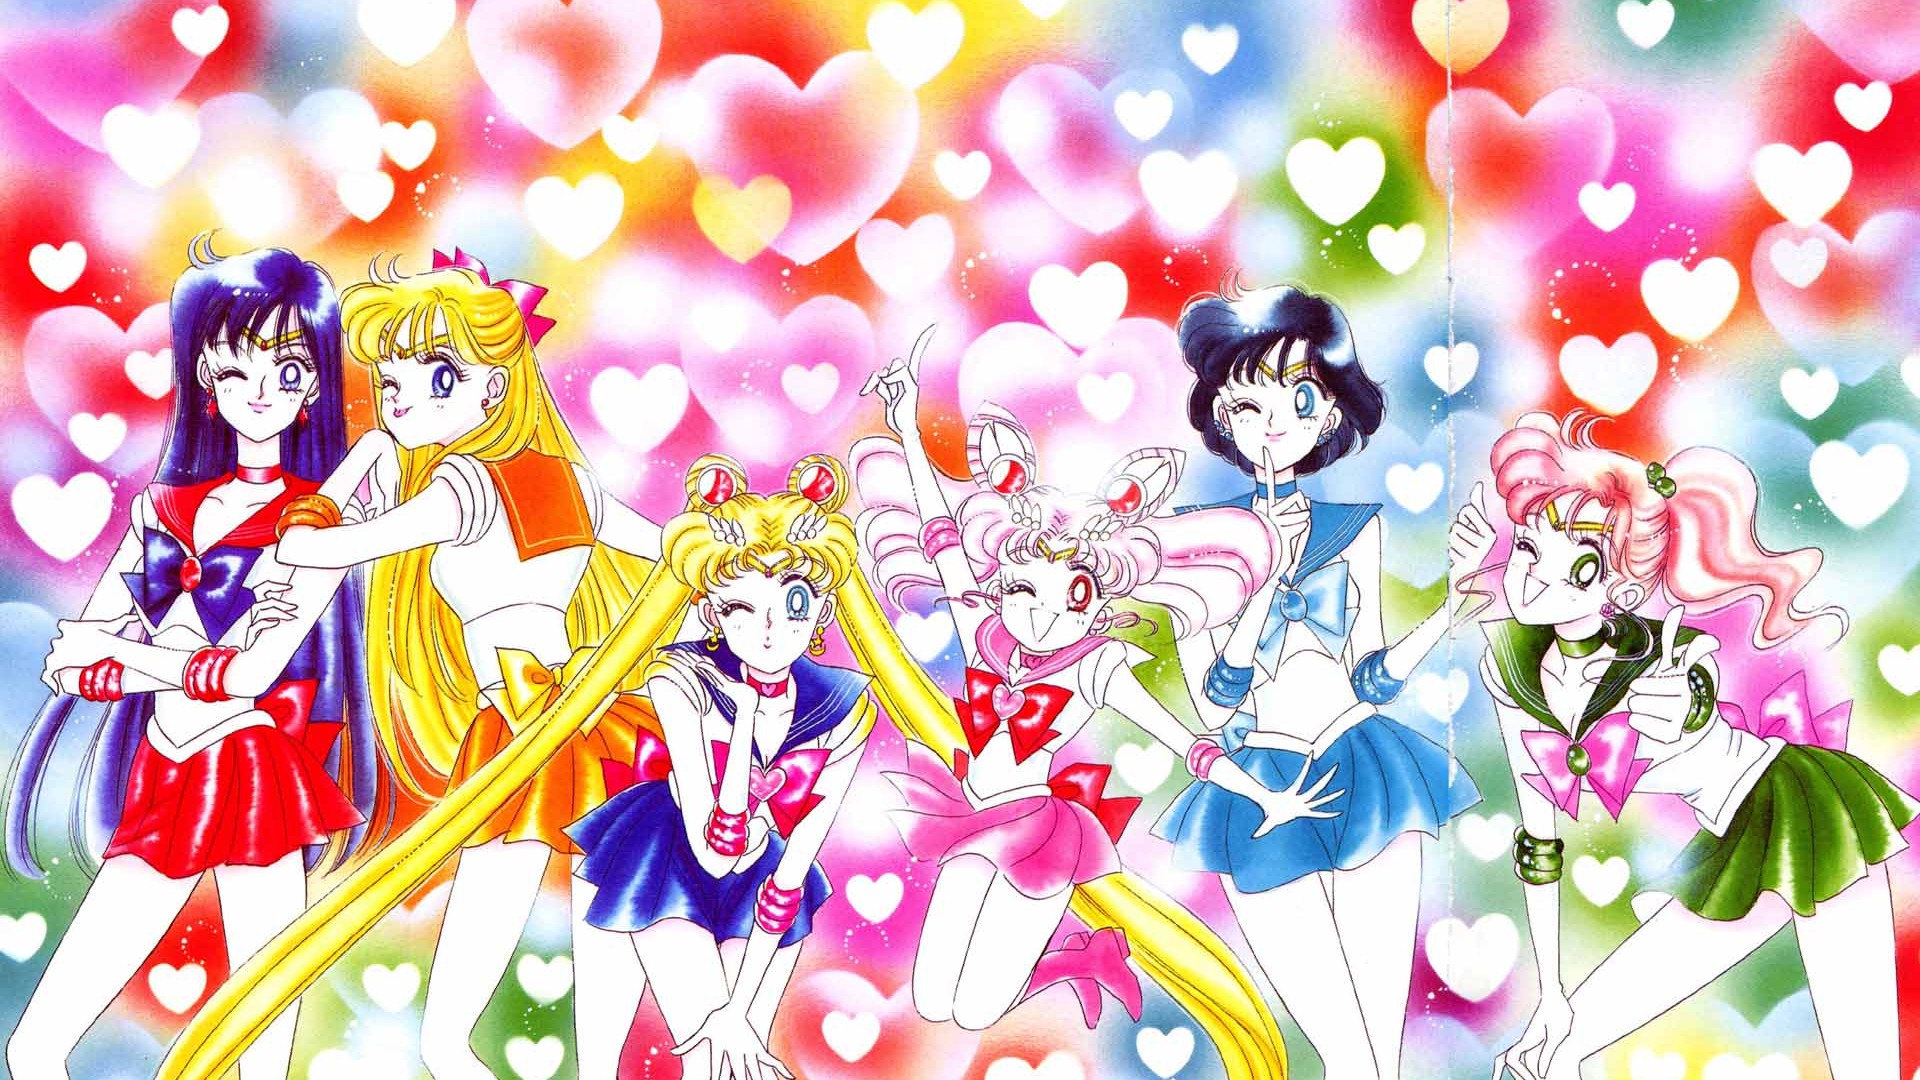 Sailor Moon Hd Fondos De Pantalla 1 1920x1080 Fondos De Descarga 